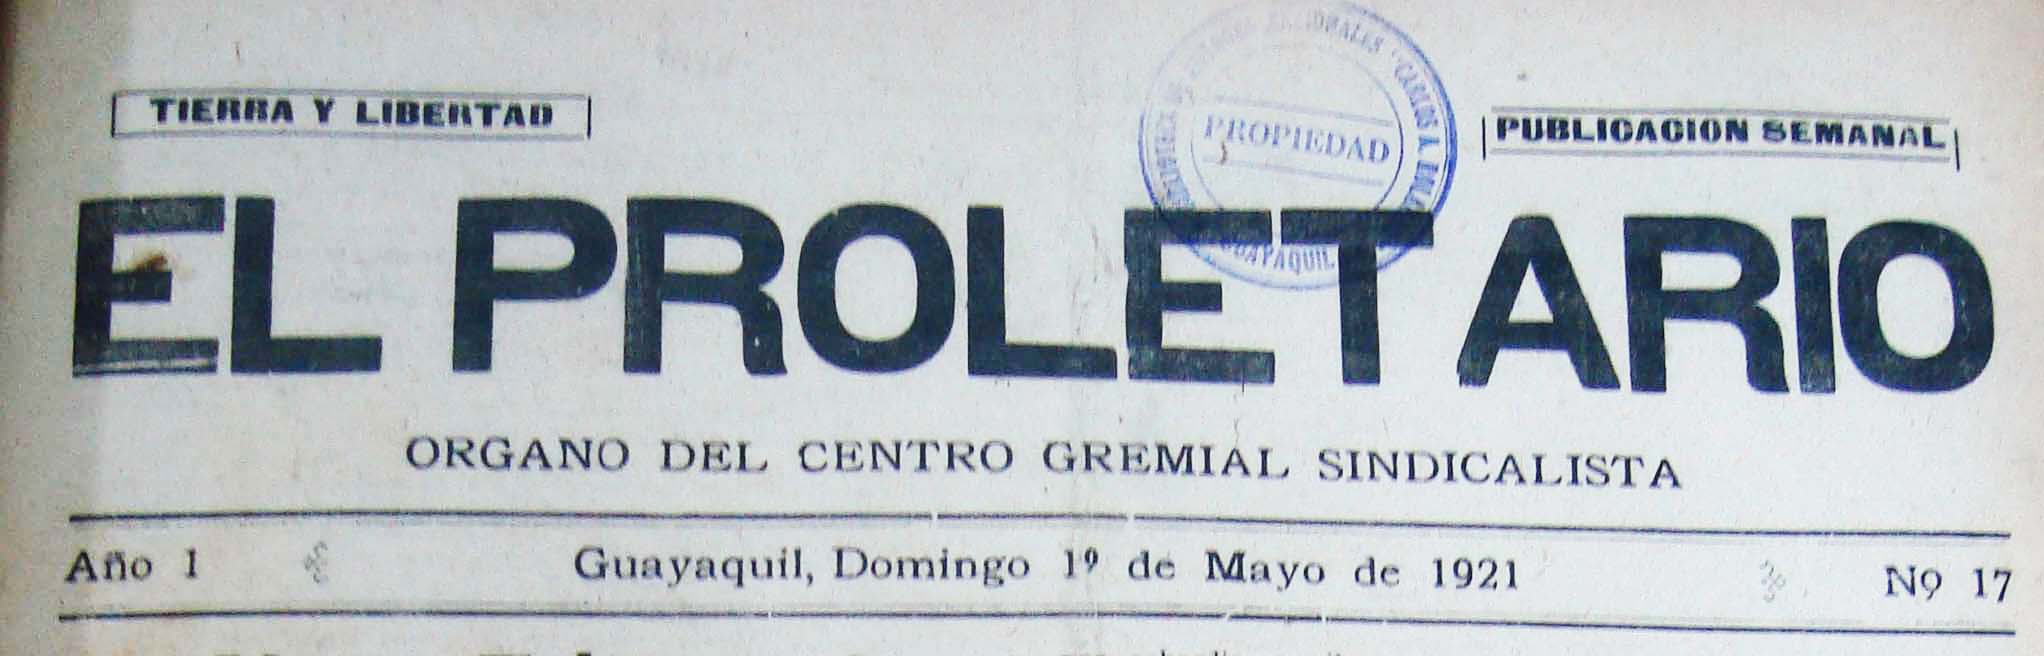 proletario1922